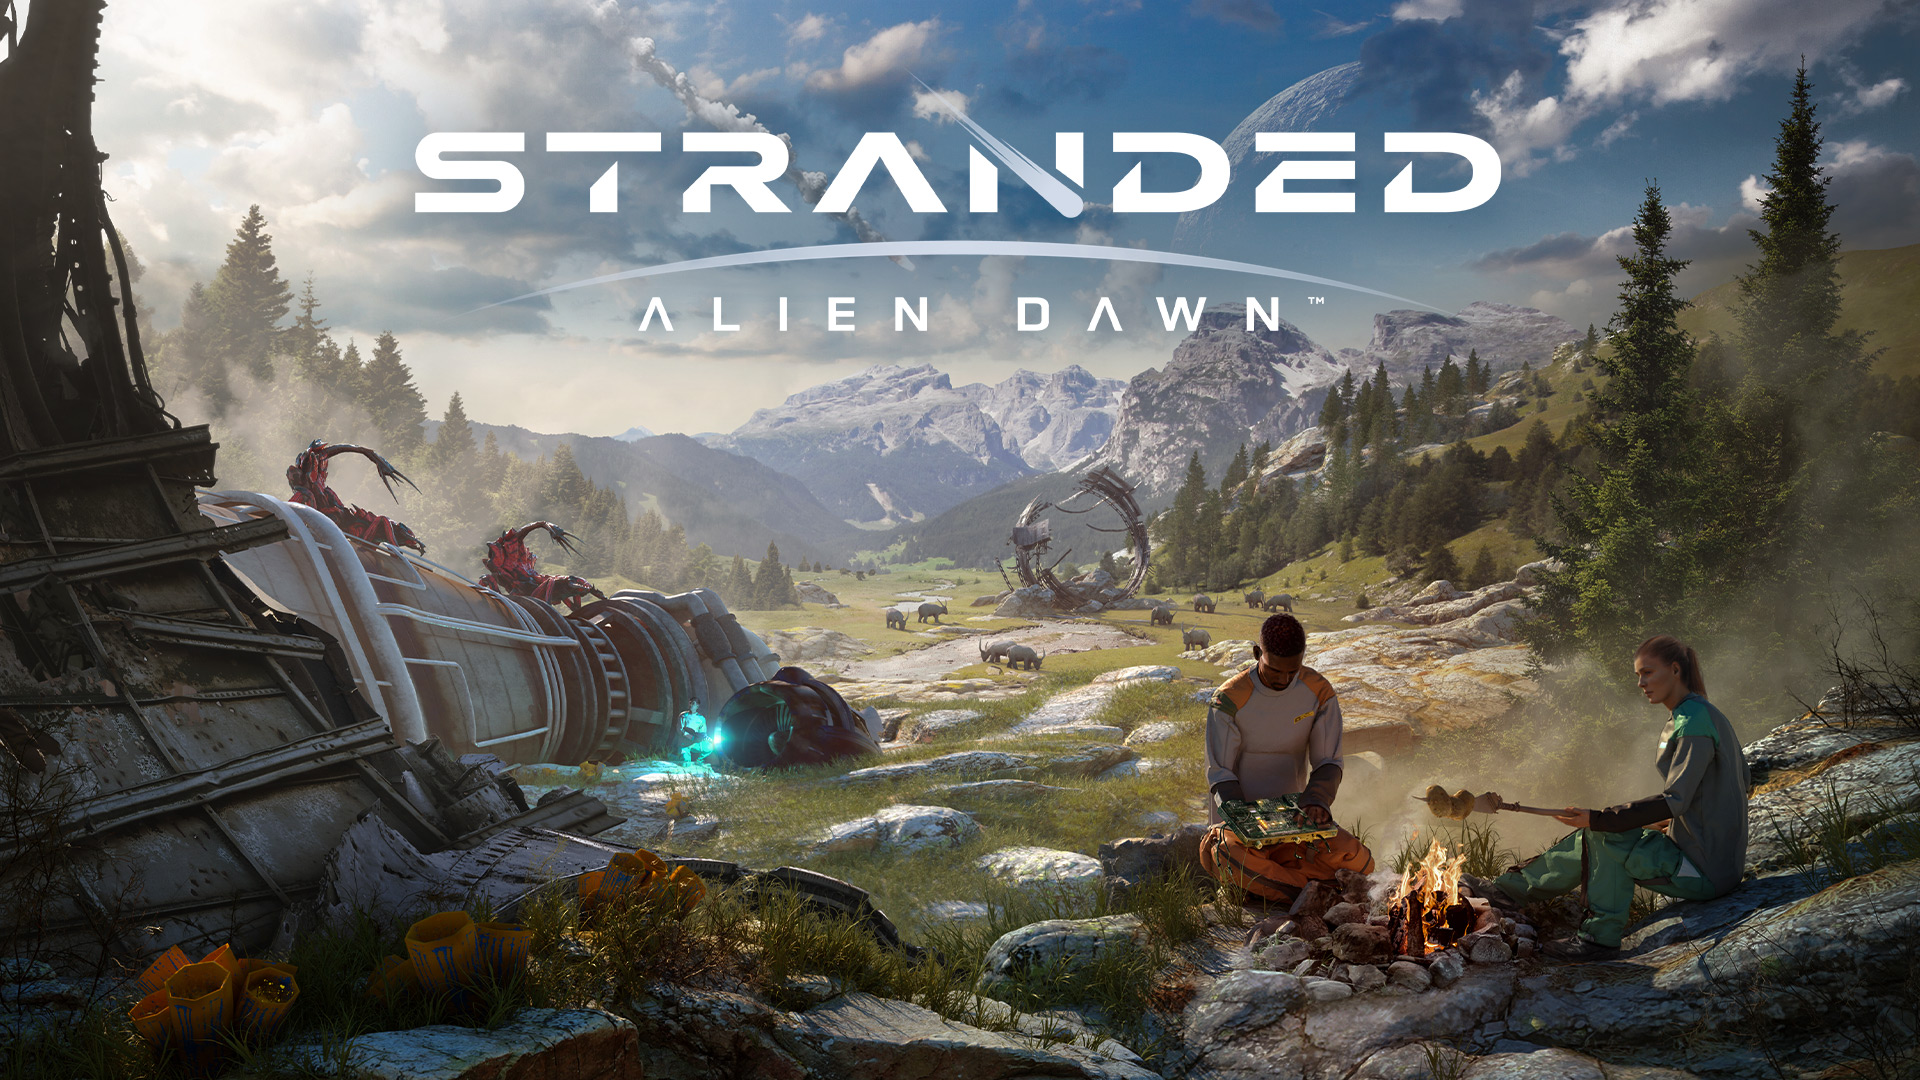 Stranded : Alien Dawn sortira de son accès anticipé le 25 avril sur PC et consoles